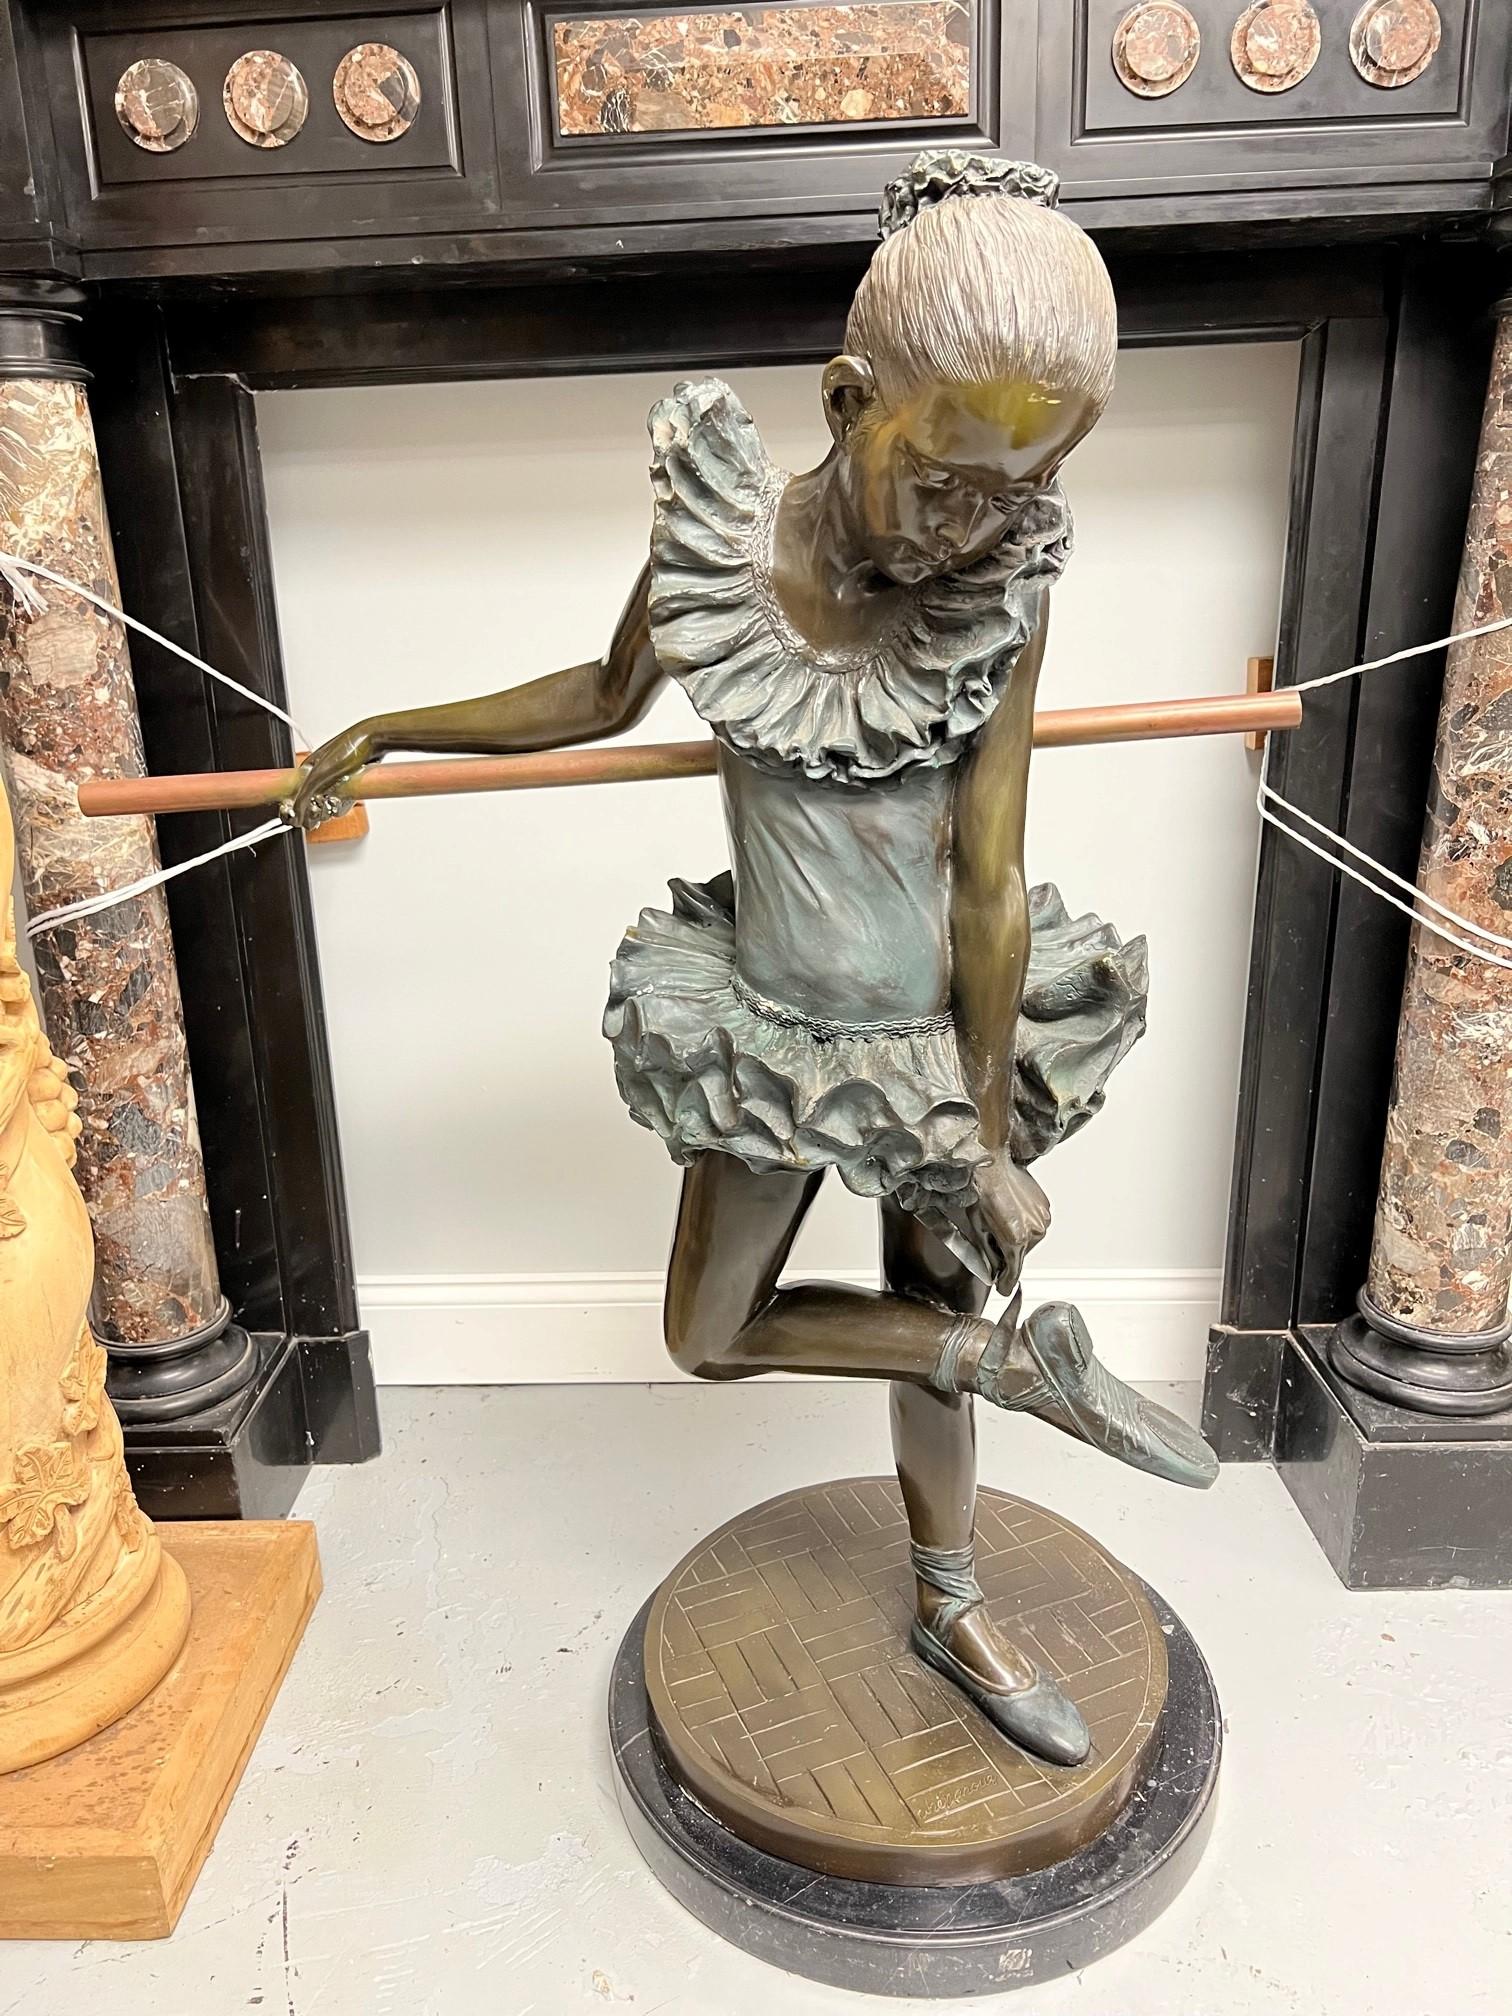 Statue de ballerine en bronze de la fin du 20e siècle représentant une jeune fille sur une base en marbre. La ballerine, une jeune fille, s'accroche à la barre, une balustrade utilisée pour ses exercices de pré-danse, et ajuste son chausson de